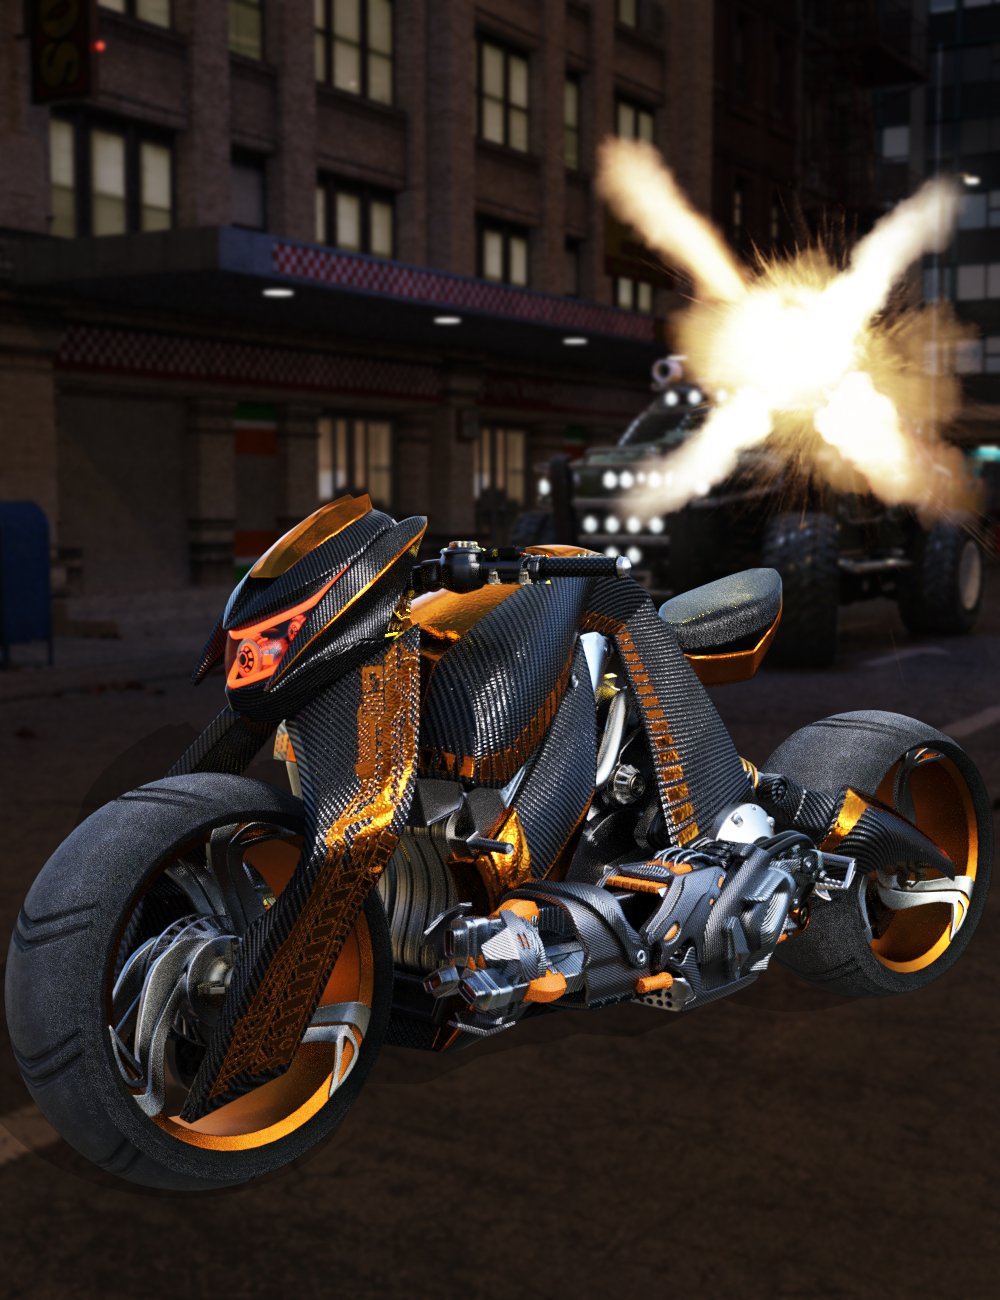 Galactic Racer Motorcycle